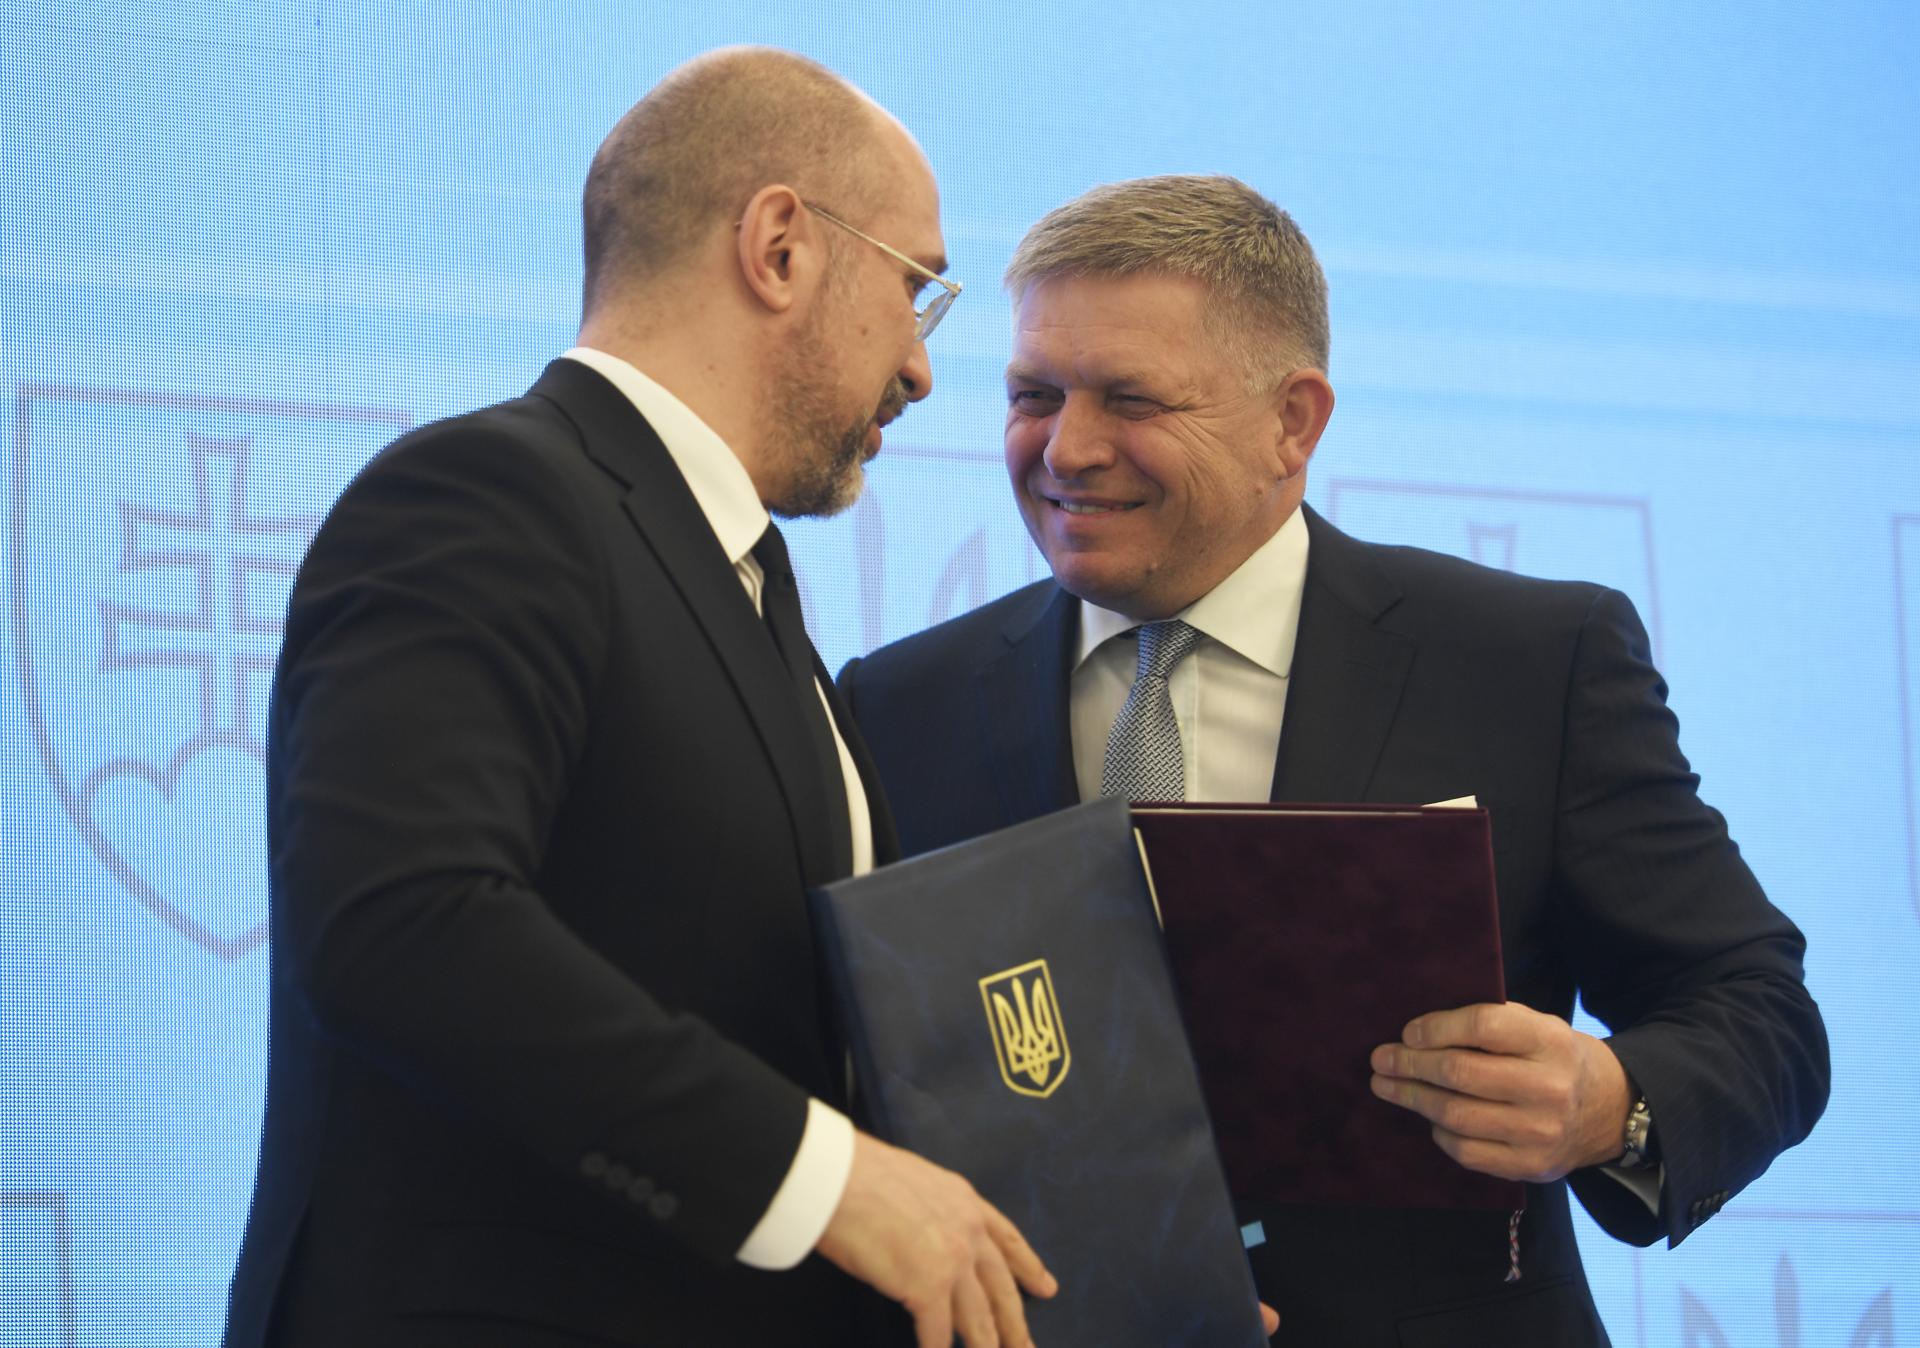 Slovensko želá Ukrajine skoré členstvo v EÚ. Nie sme krajina, ktorá chce klásť prekážky, vyhlásil Fico